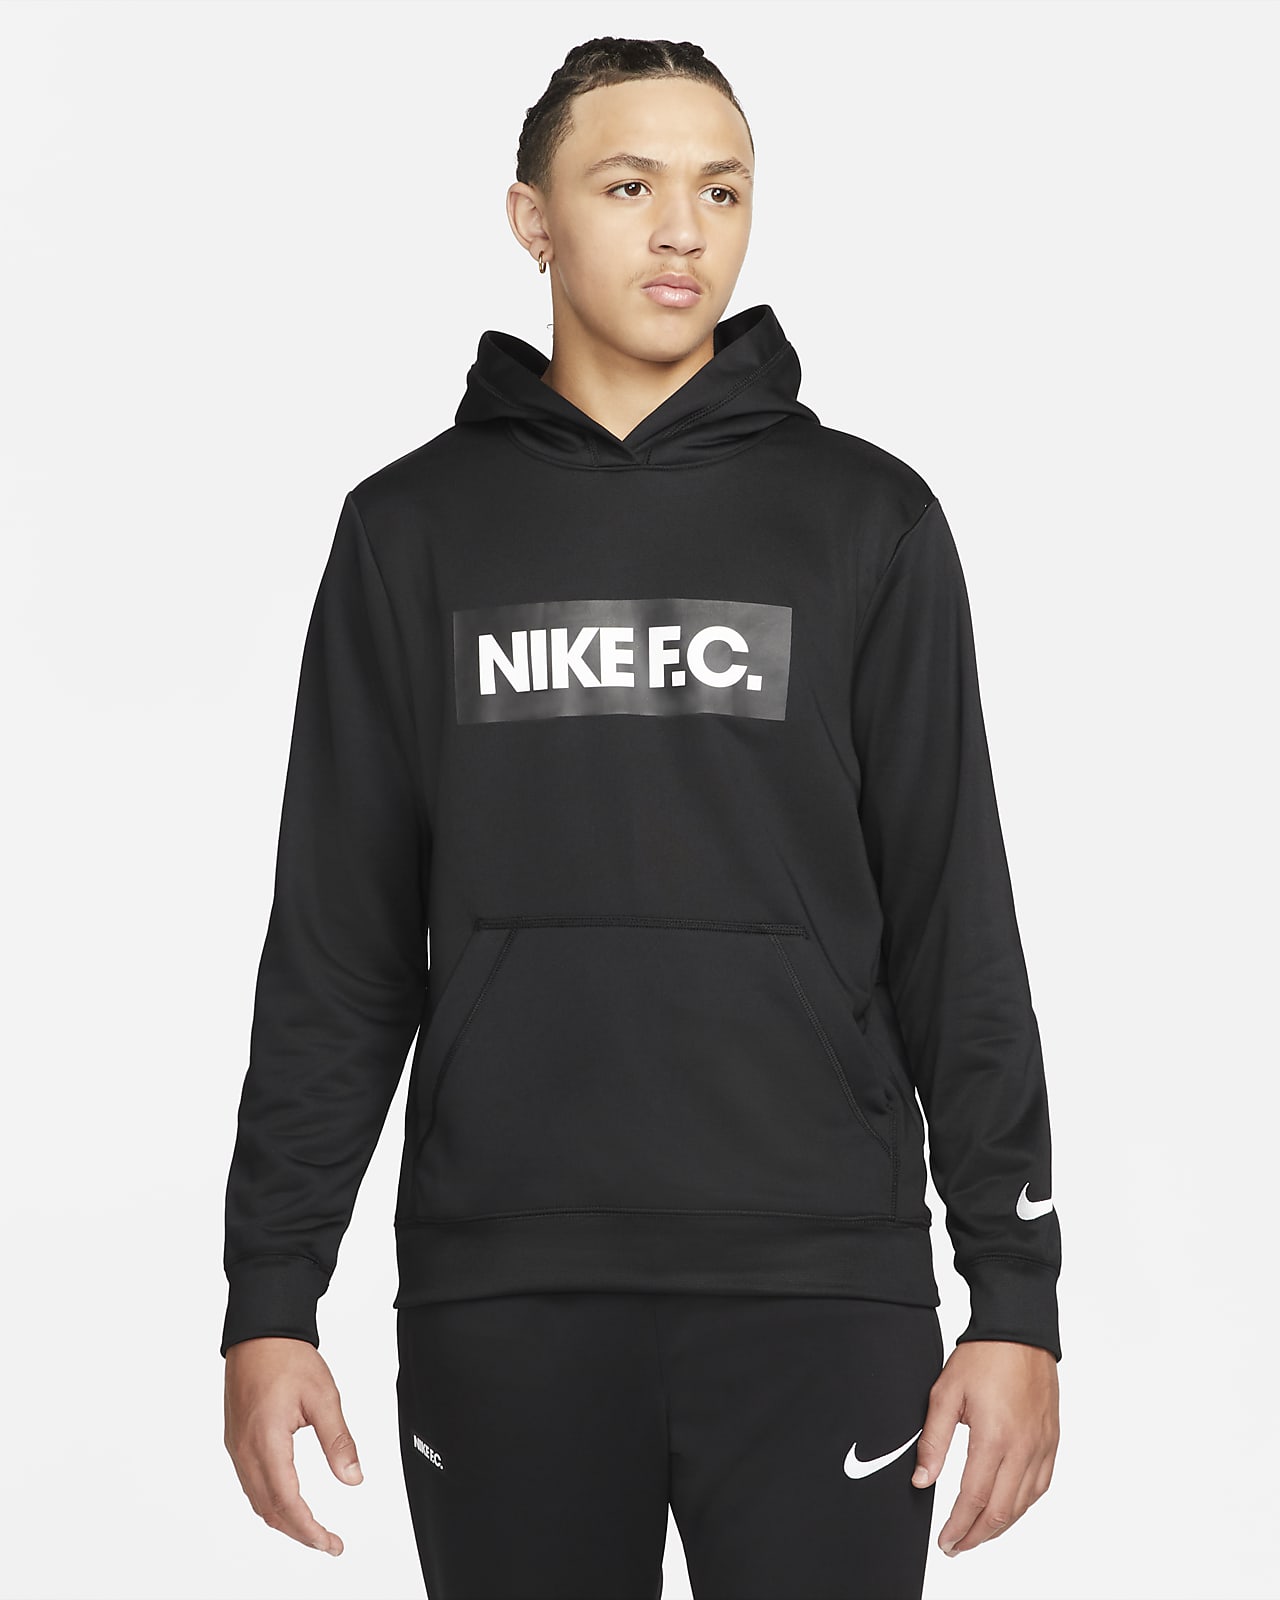 Nike F.C. Sudadera con capucha de fútbol - Hombre